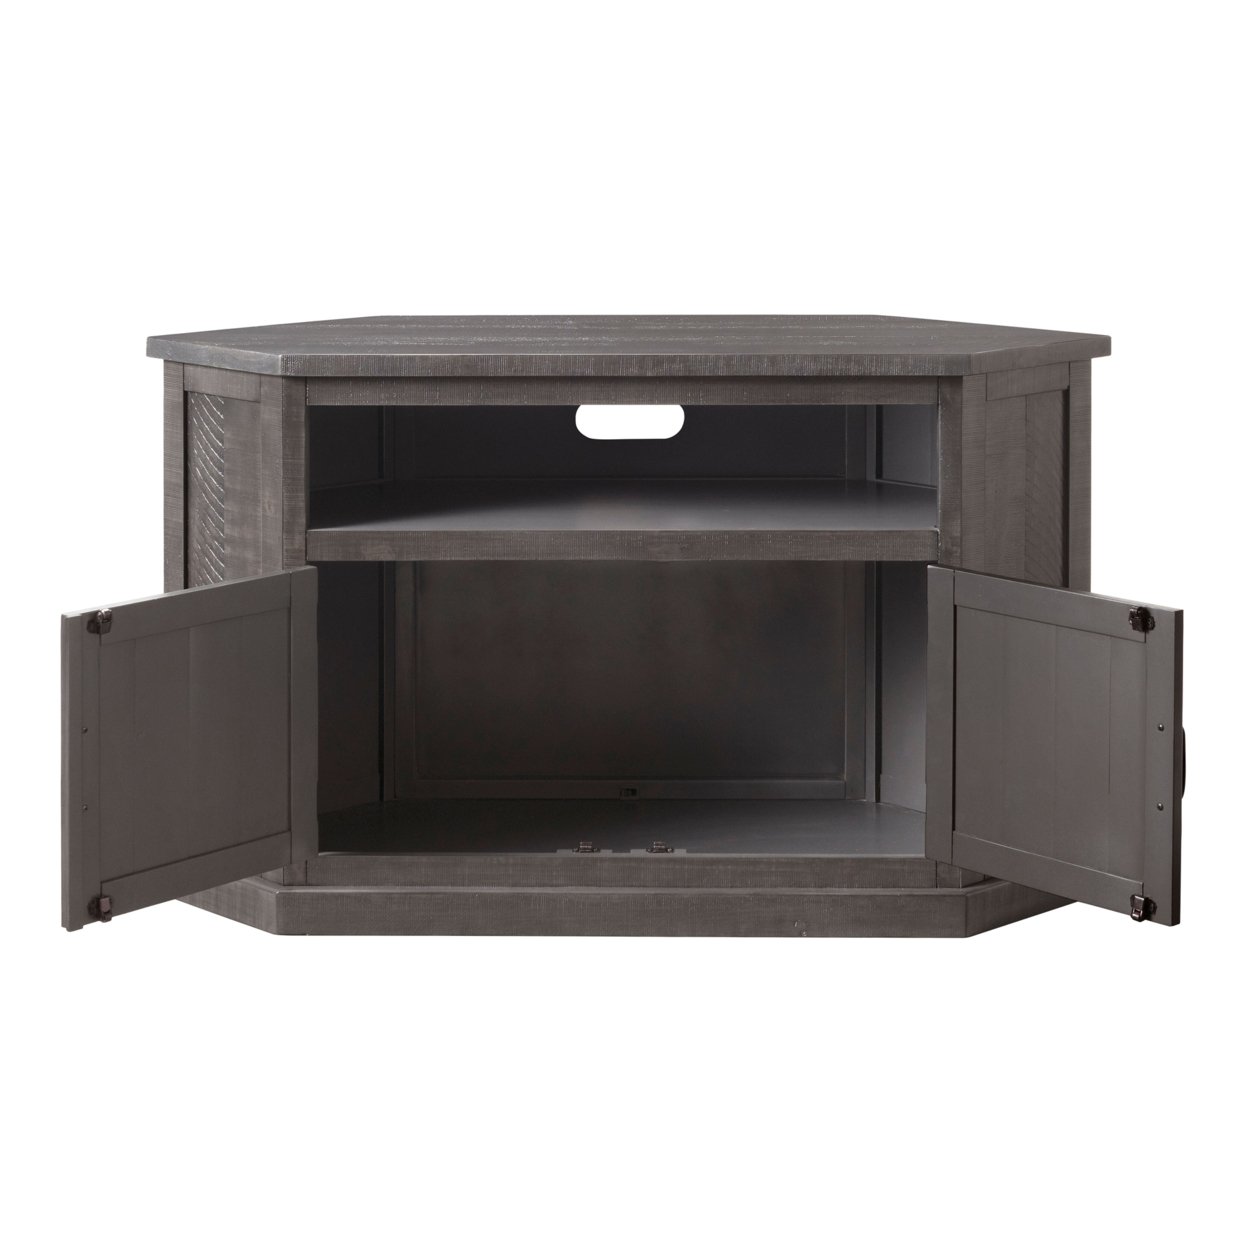 Rustic Style Wooden Corner TV Stand With 2 Door Cabinet, Gray- Saltoro Sherpi